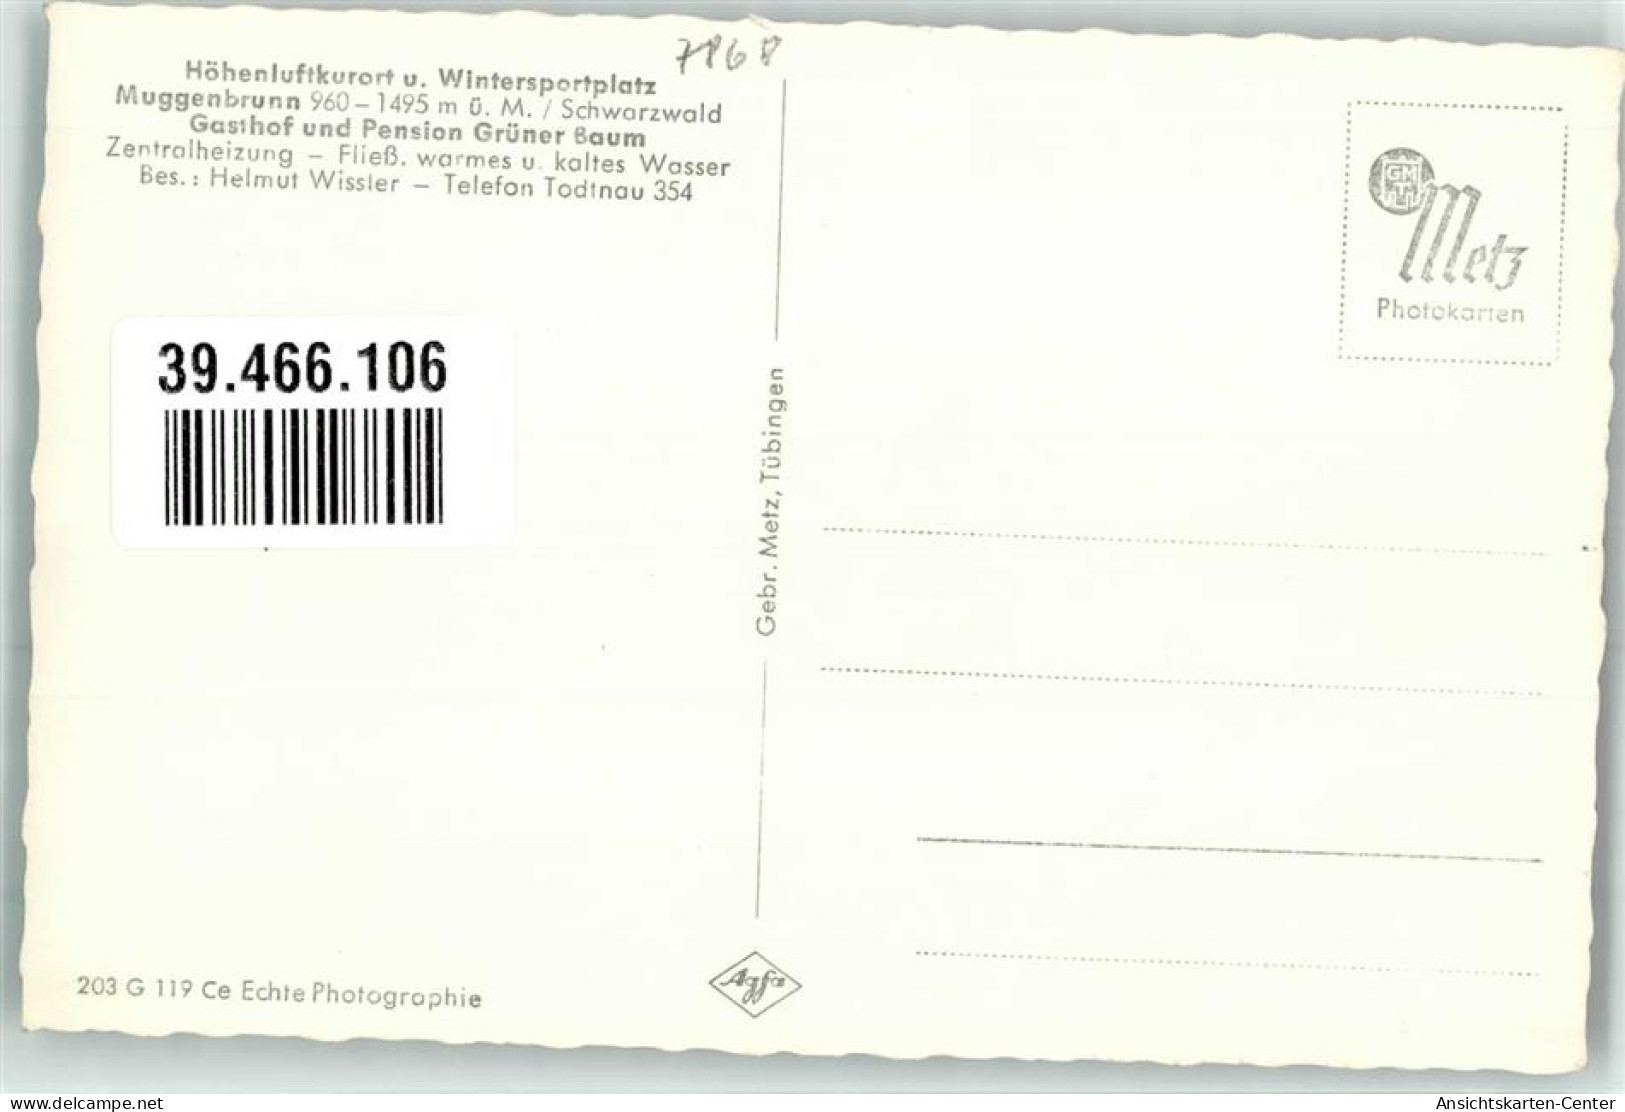 39466106 - Muggenbrunn - Todtnau